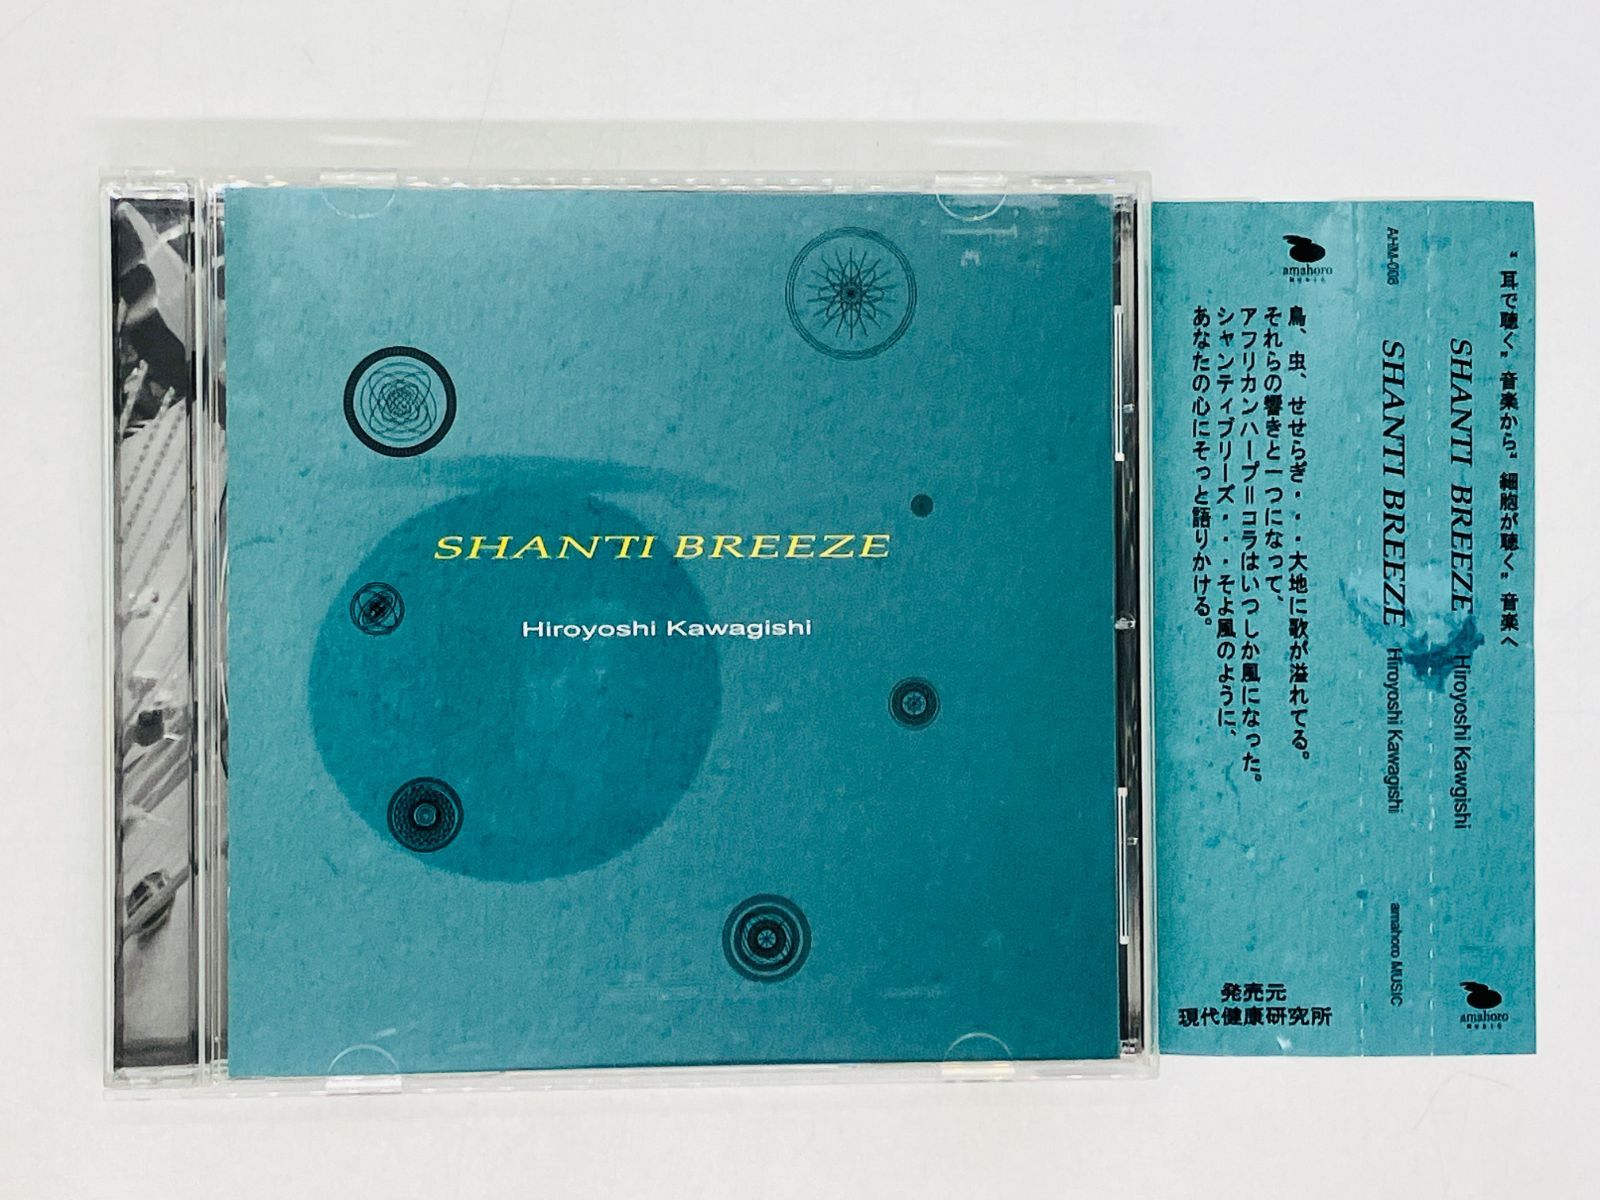 CD SHANTI BREEZE Hiroyoshi Kawagishi / シャンティブリーズ / 帯付き